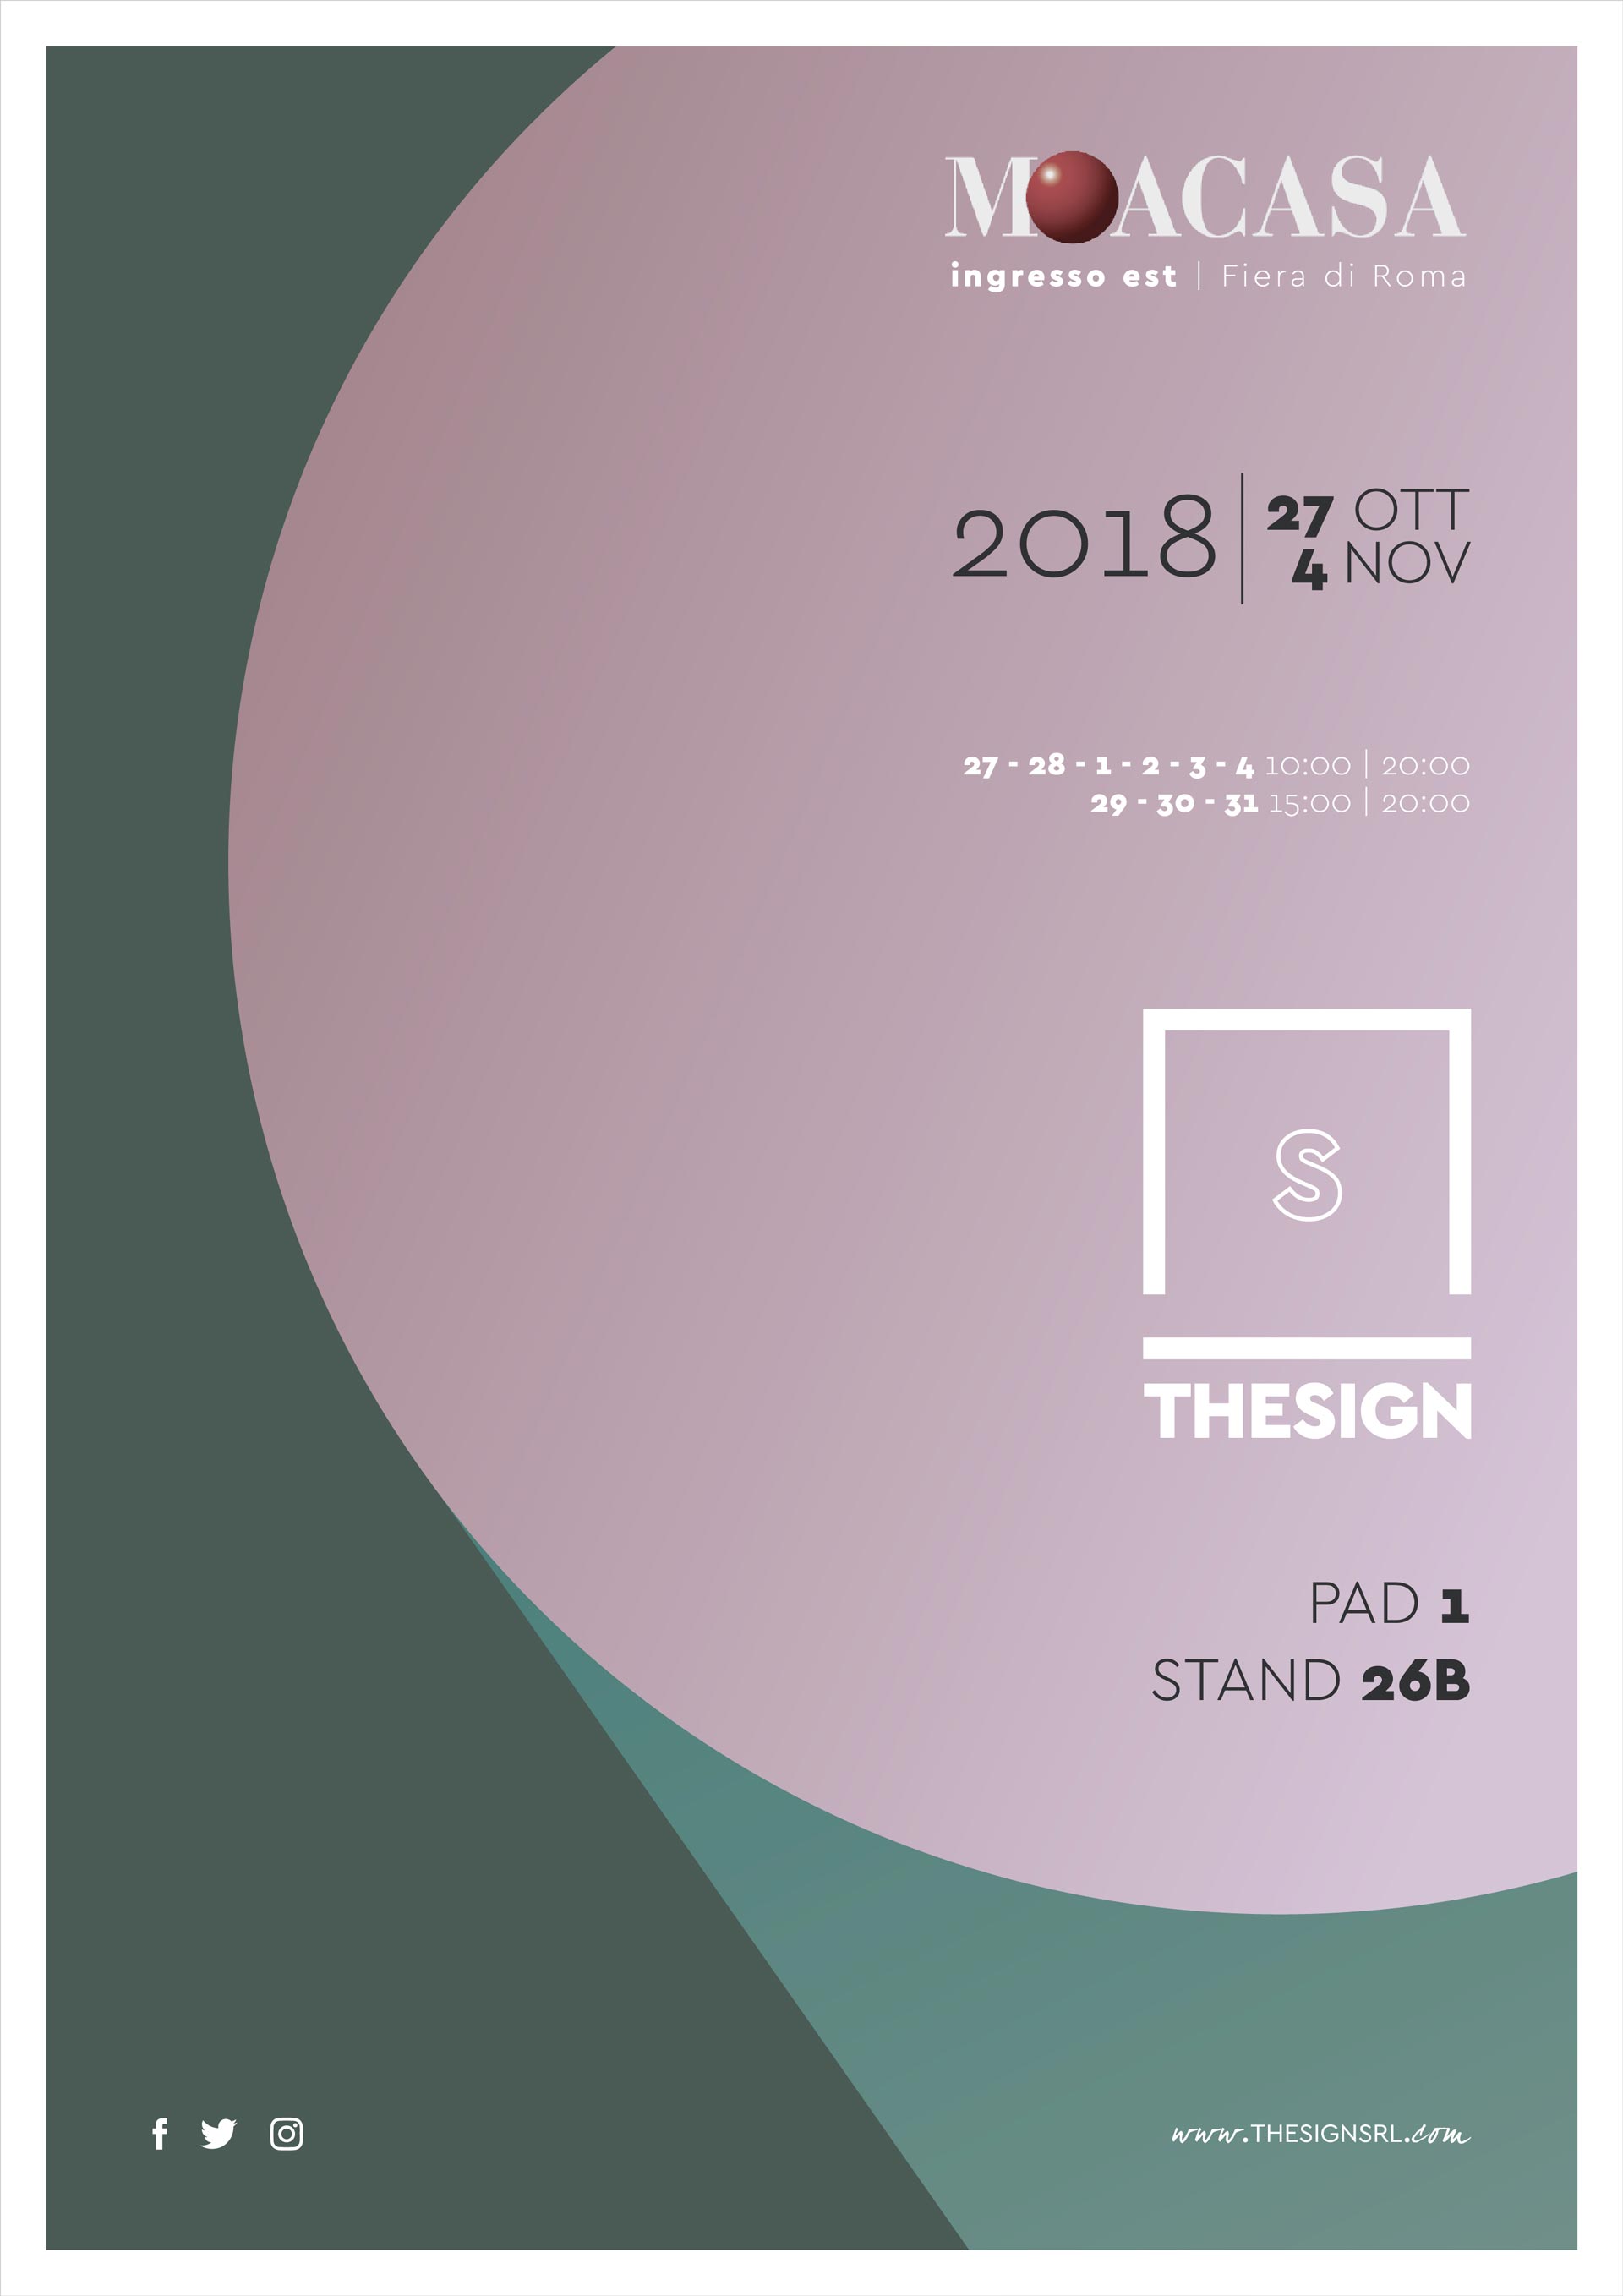 18/10/2018 Cantori al Moacasa 2018 con Thesign - Cantori